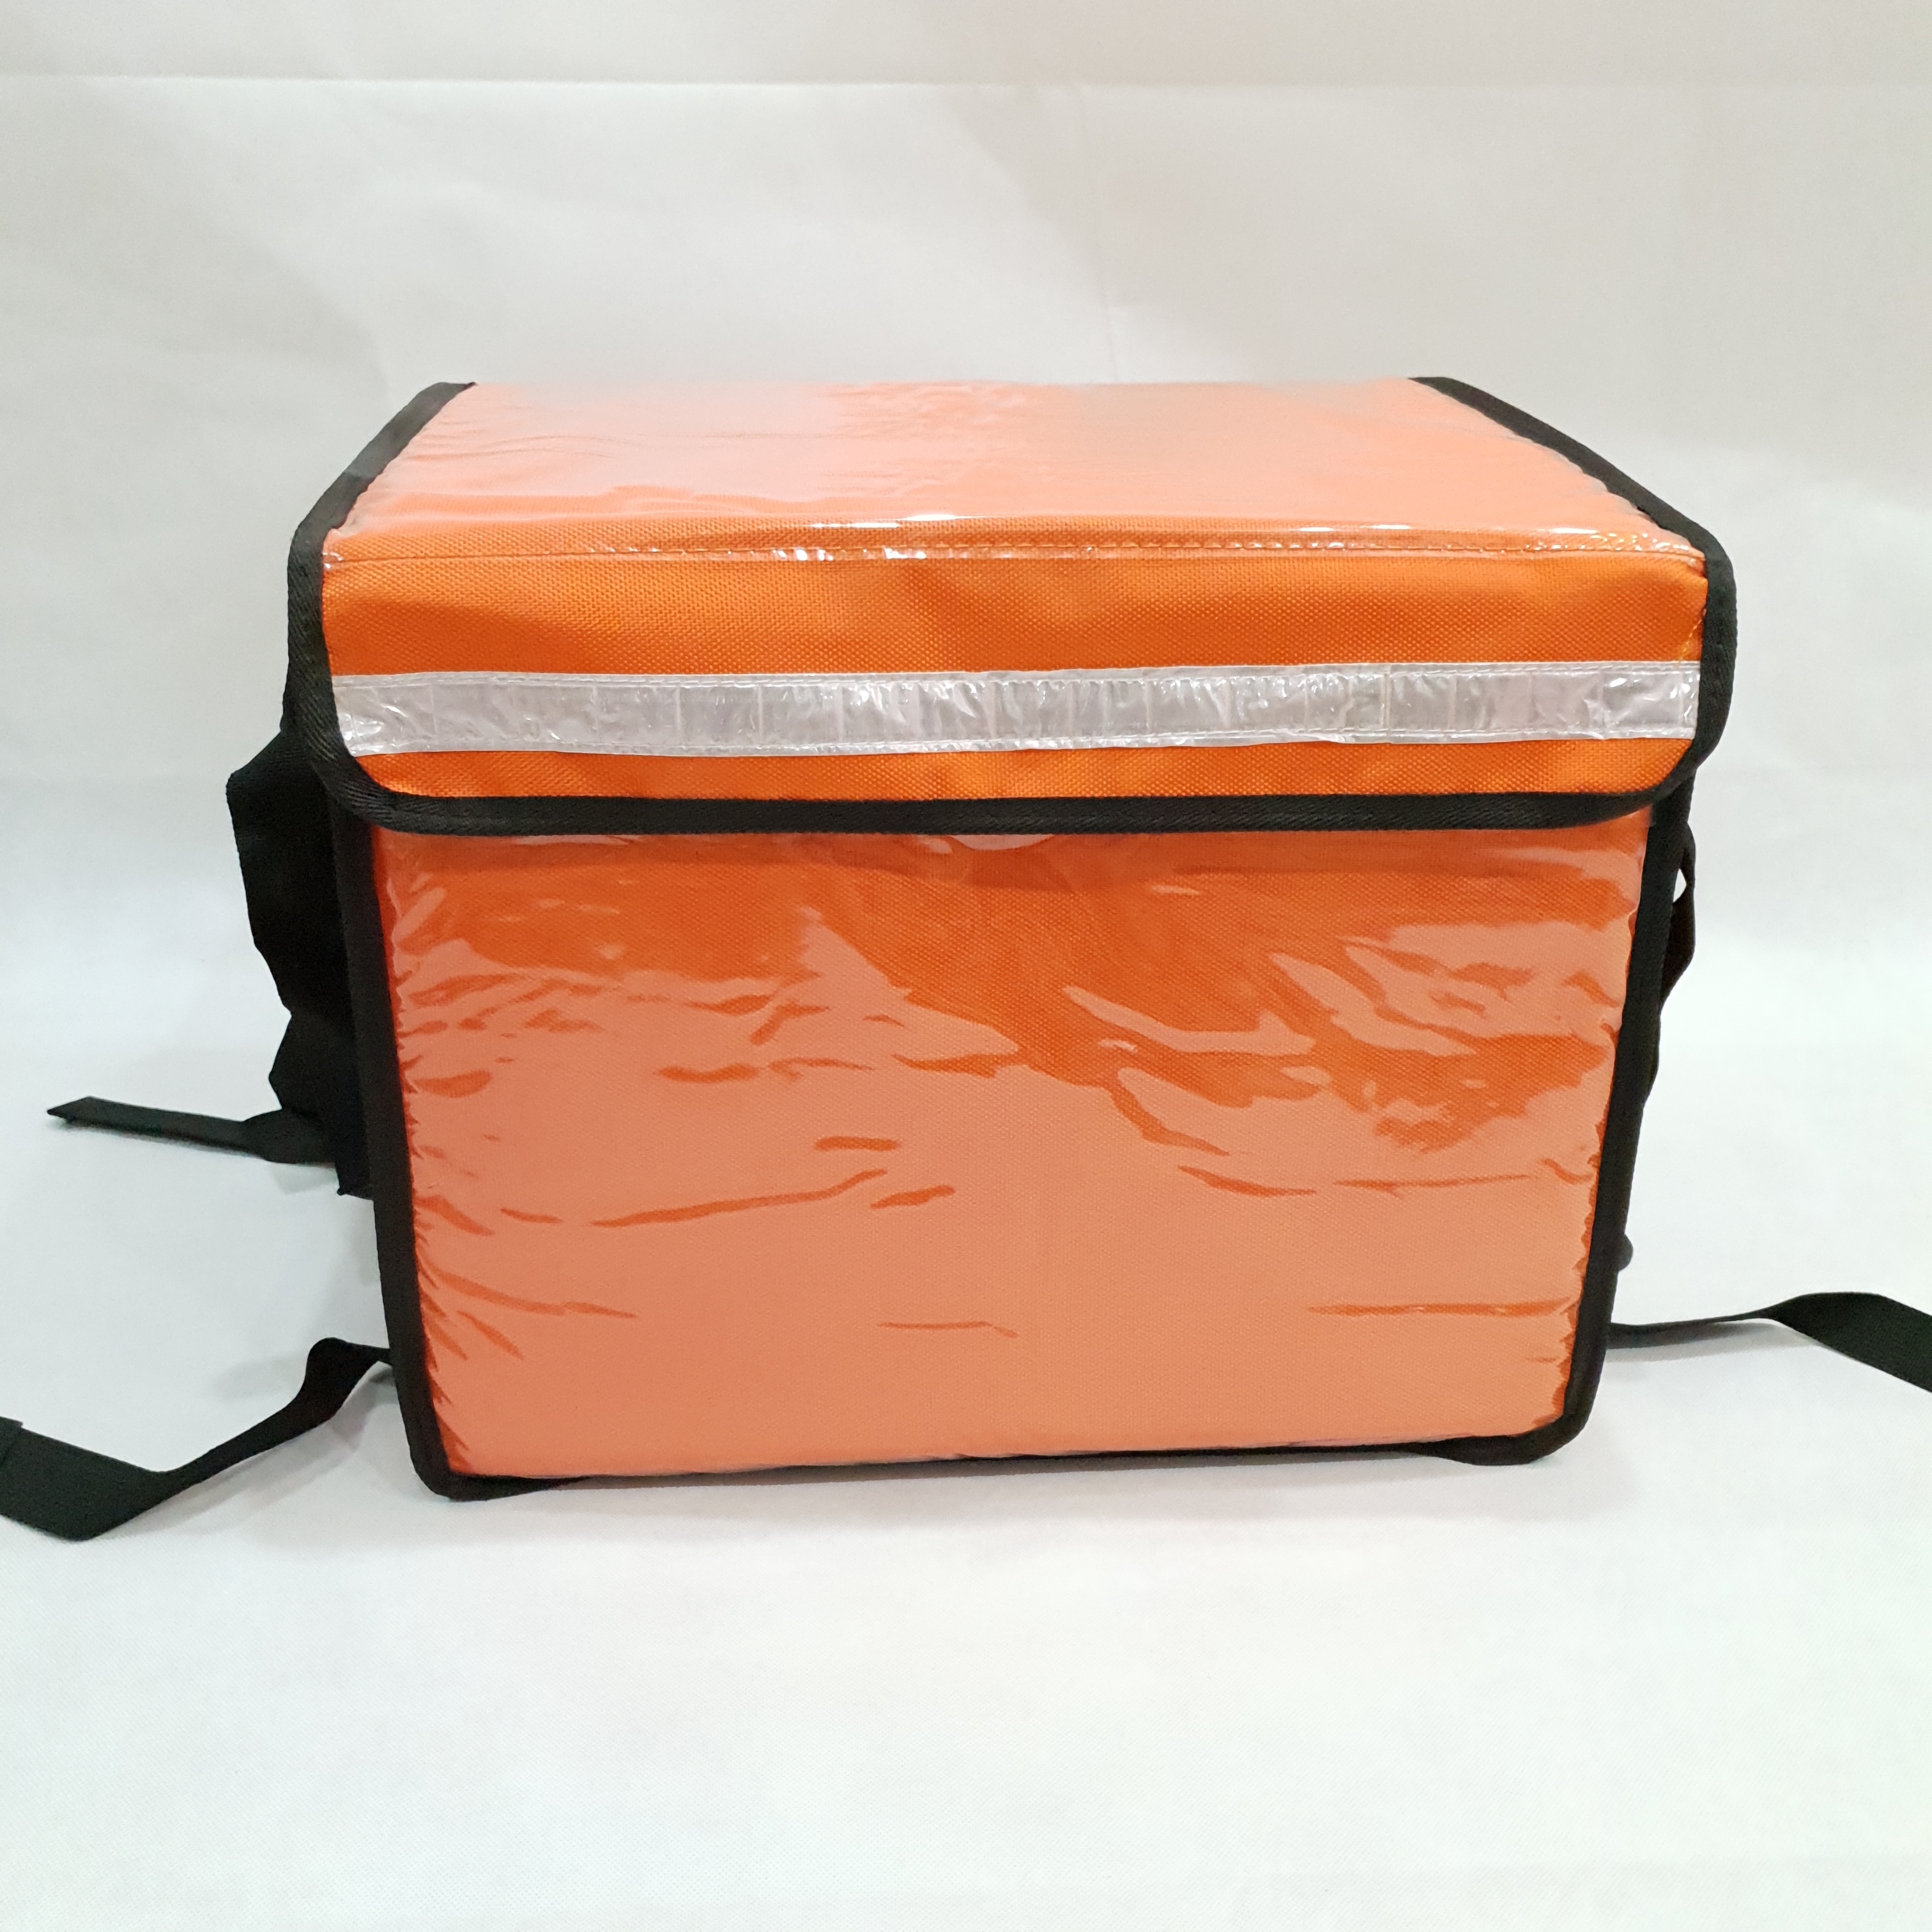 Túi giữ nhiệt giao hàng 44L màu cam